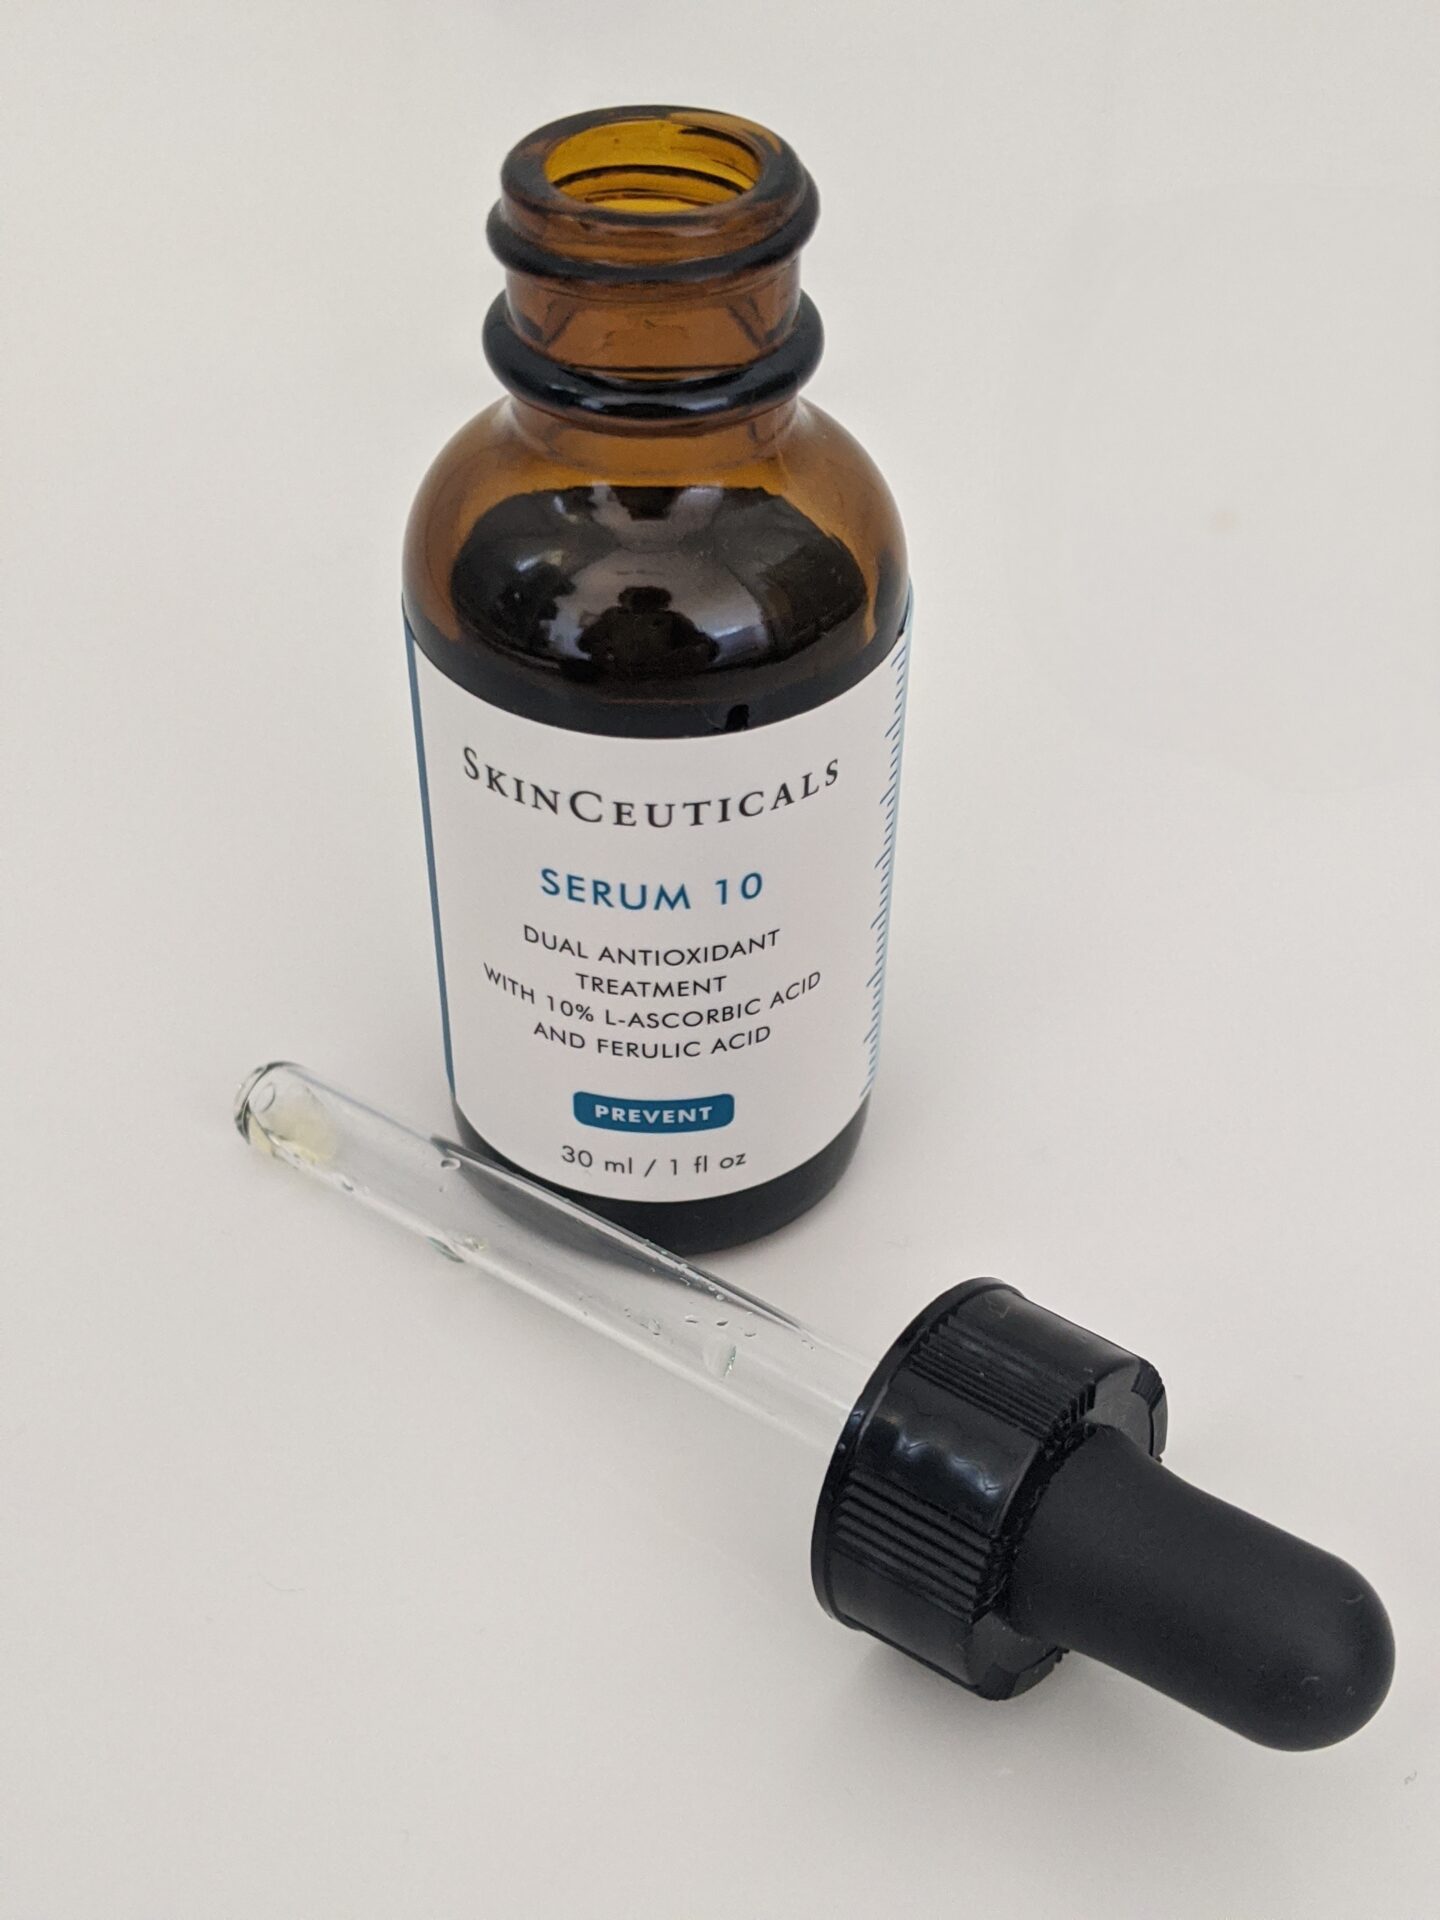 SkinCeuticals Serum 10. Vitamin C - The Review.